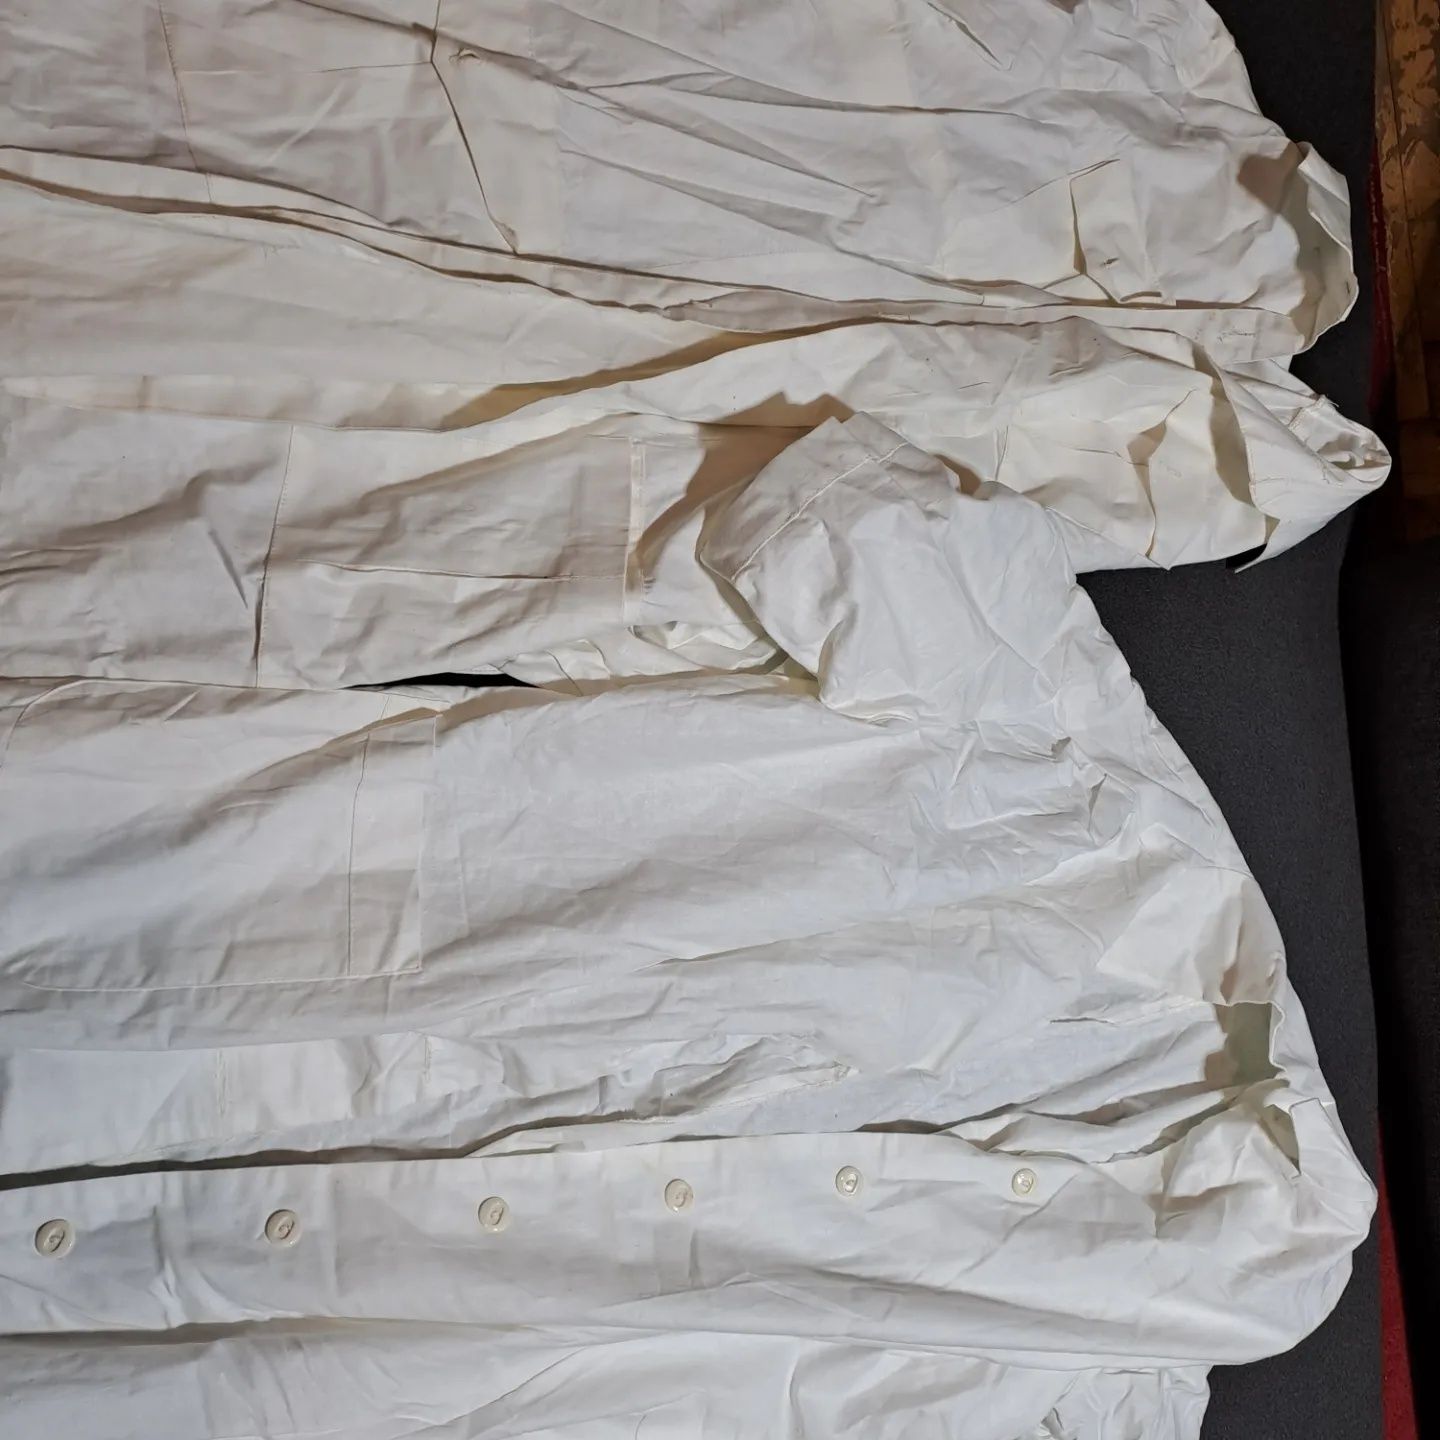 Халаты белые новые 2 шт  за 150 гривен.